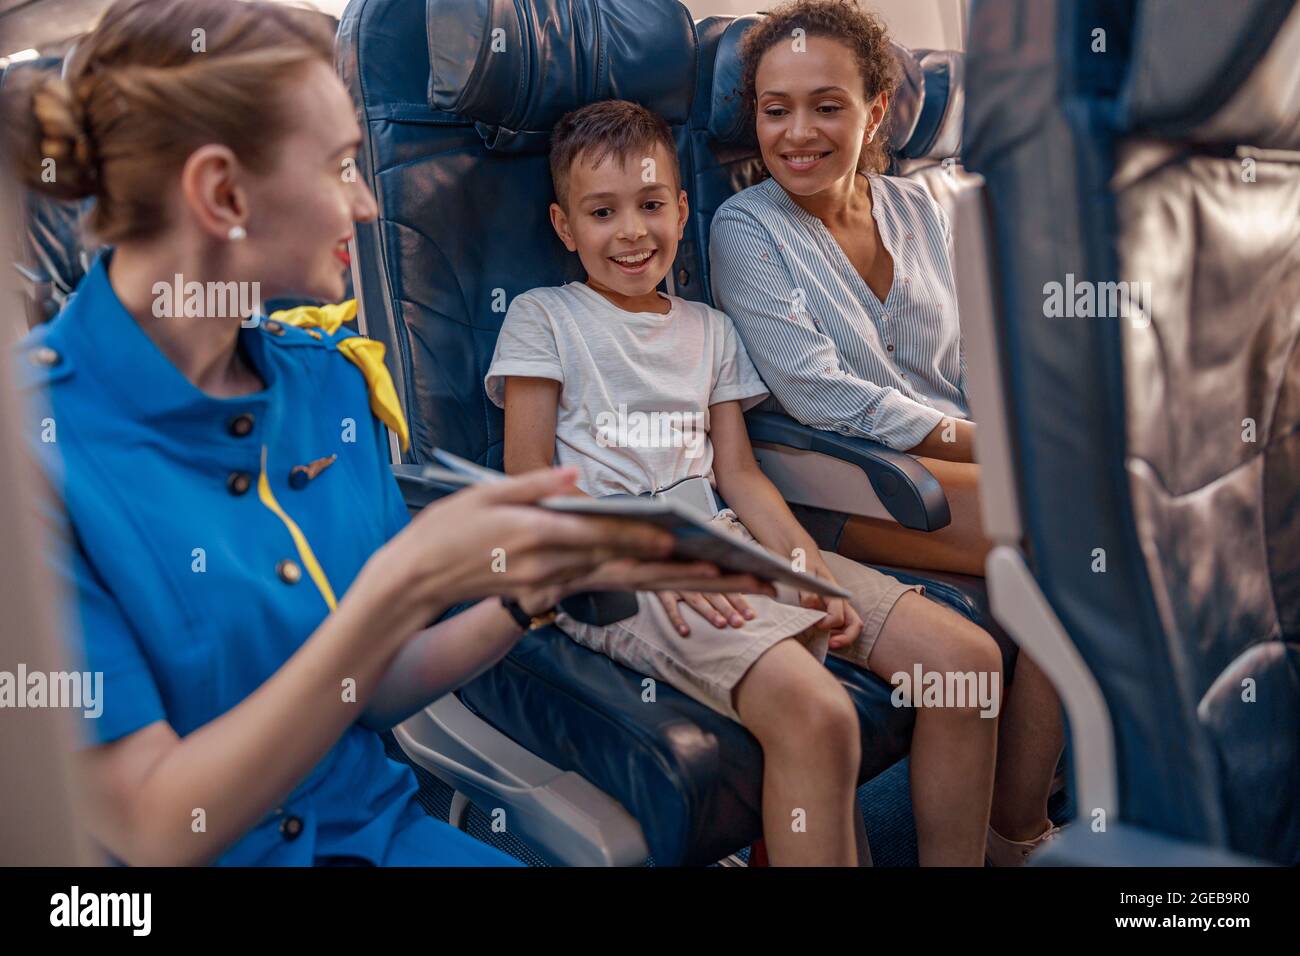 Hostess aria femminile cercando di intrattenere un bambino sull'aereo offrendo un libro da leggere. L'equipaggio di cabina fornisce il servizio alla famiglia in aereo Foto Stock